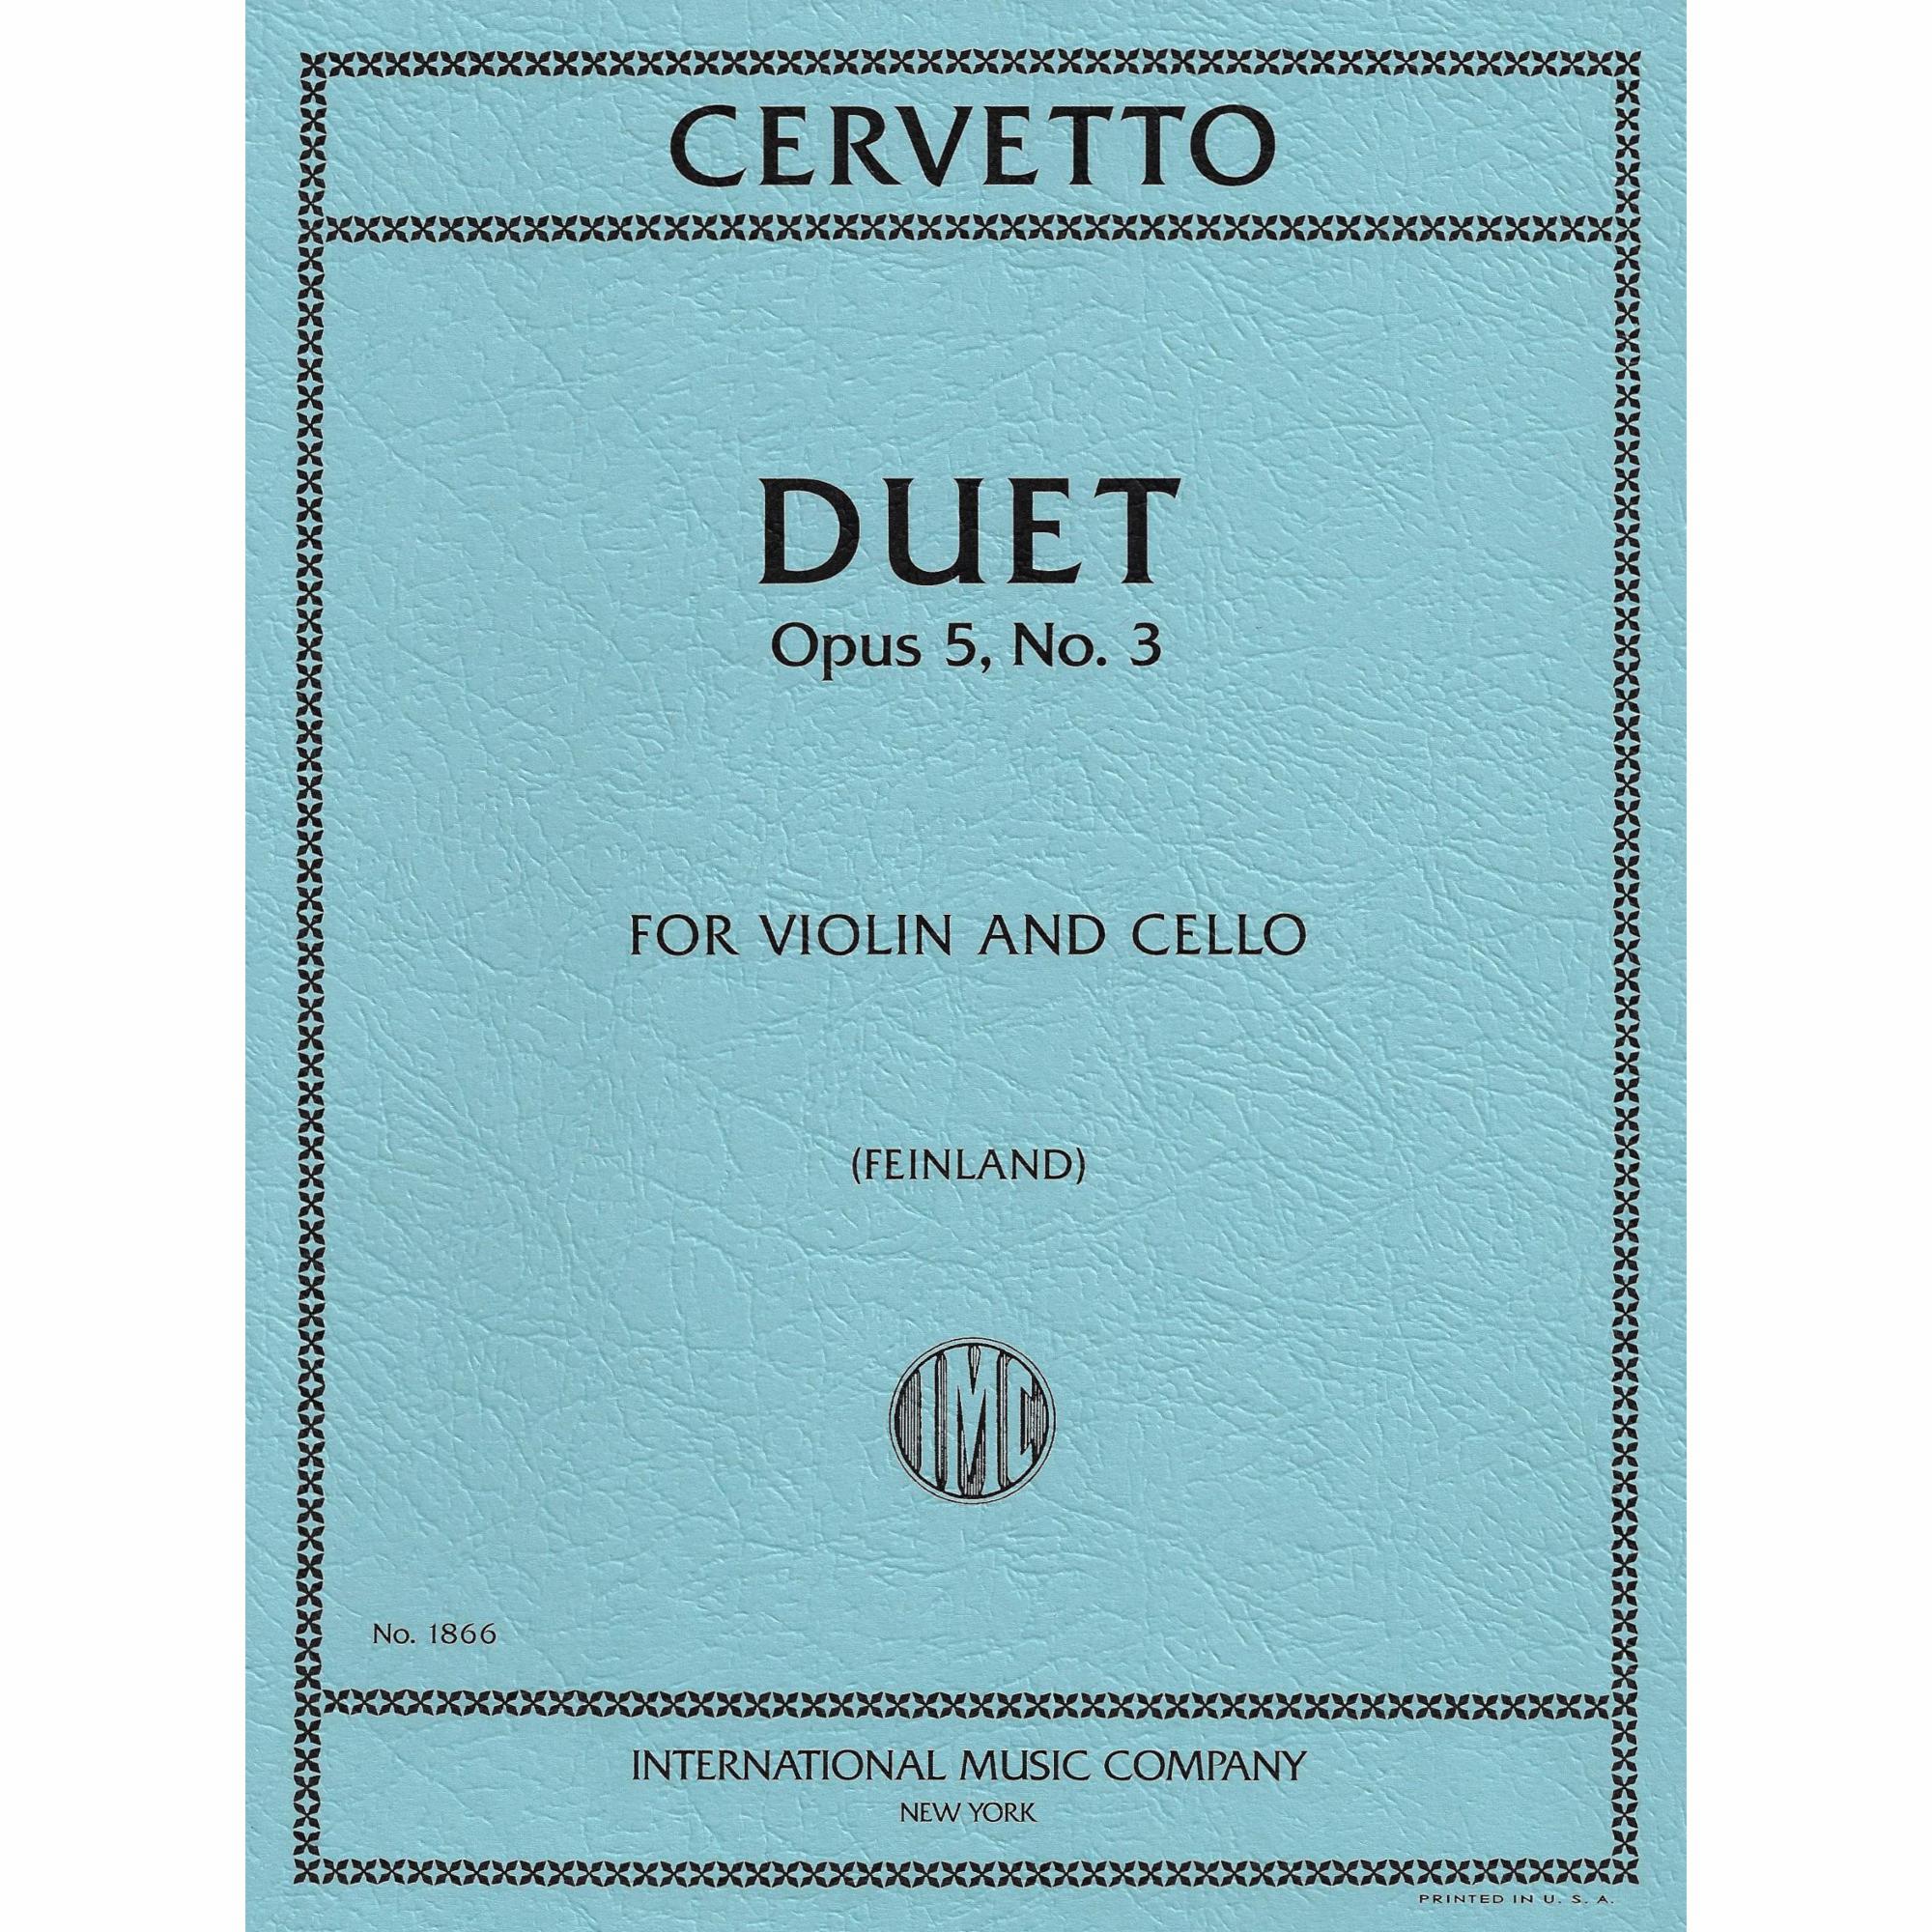 Cervetto -- Duet, Op. 5, No. 3 for Violin and Cello